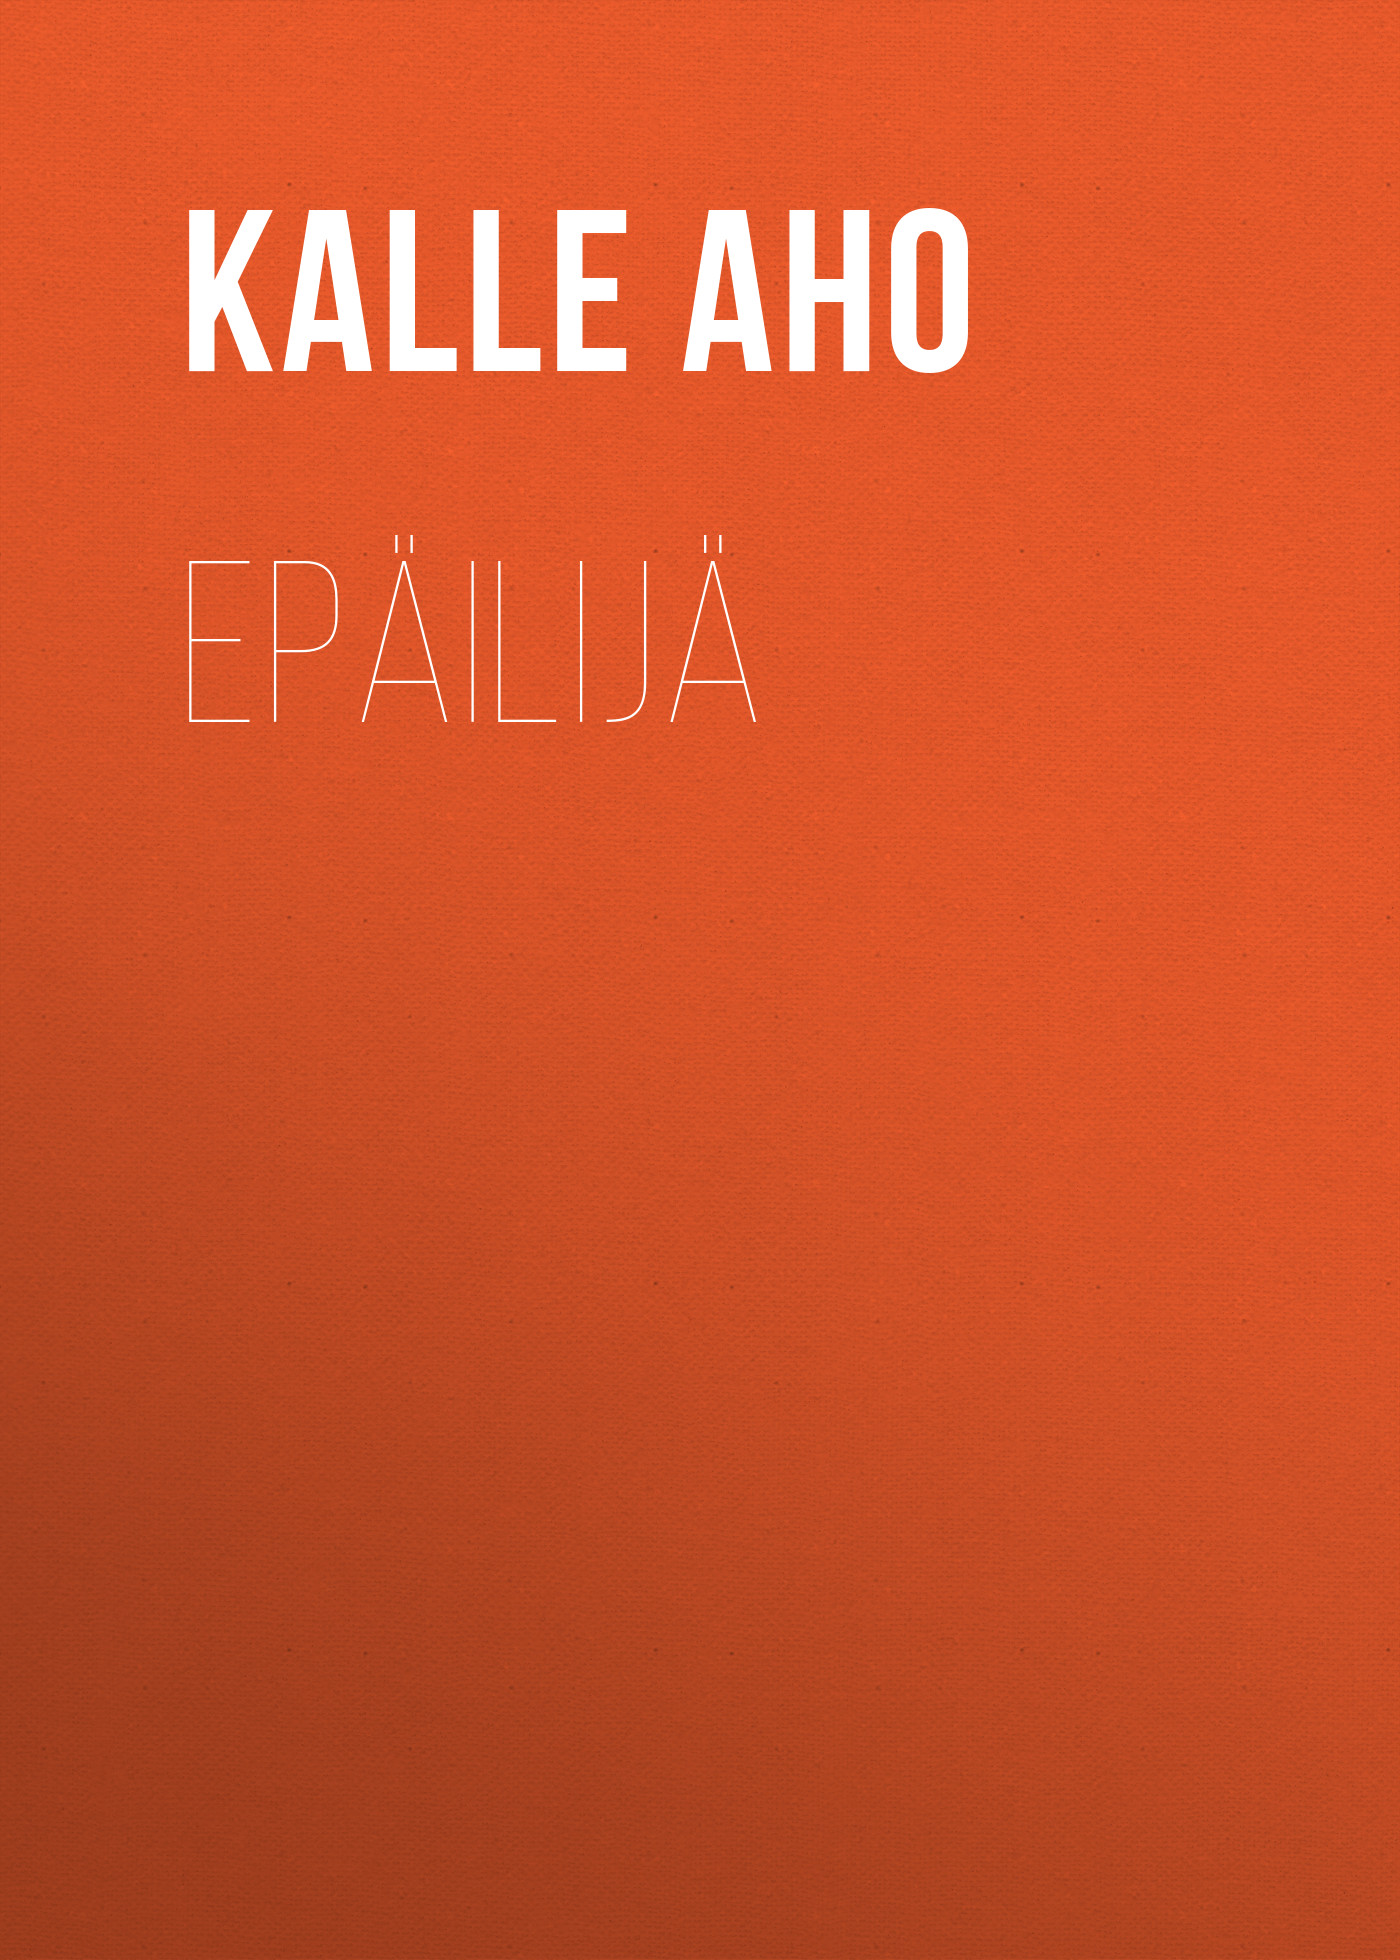 Книга Epäilijä из серии , созданная Kalle Aho, может относится к жанру Зарубежная старинная литература, Зарубежная классика, Зарубежная драматургия. Стоимость электронной книги Epäilijä с идентификатором 24175172 составляет 5.99 руб.